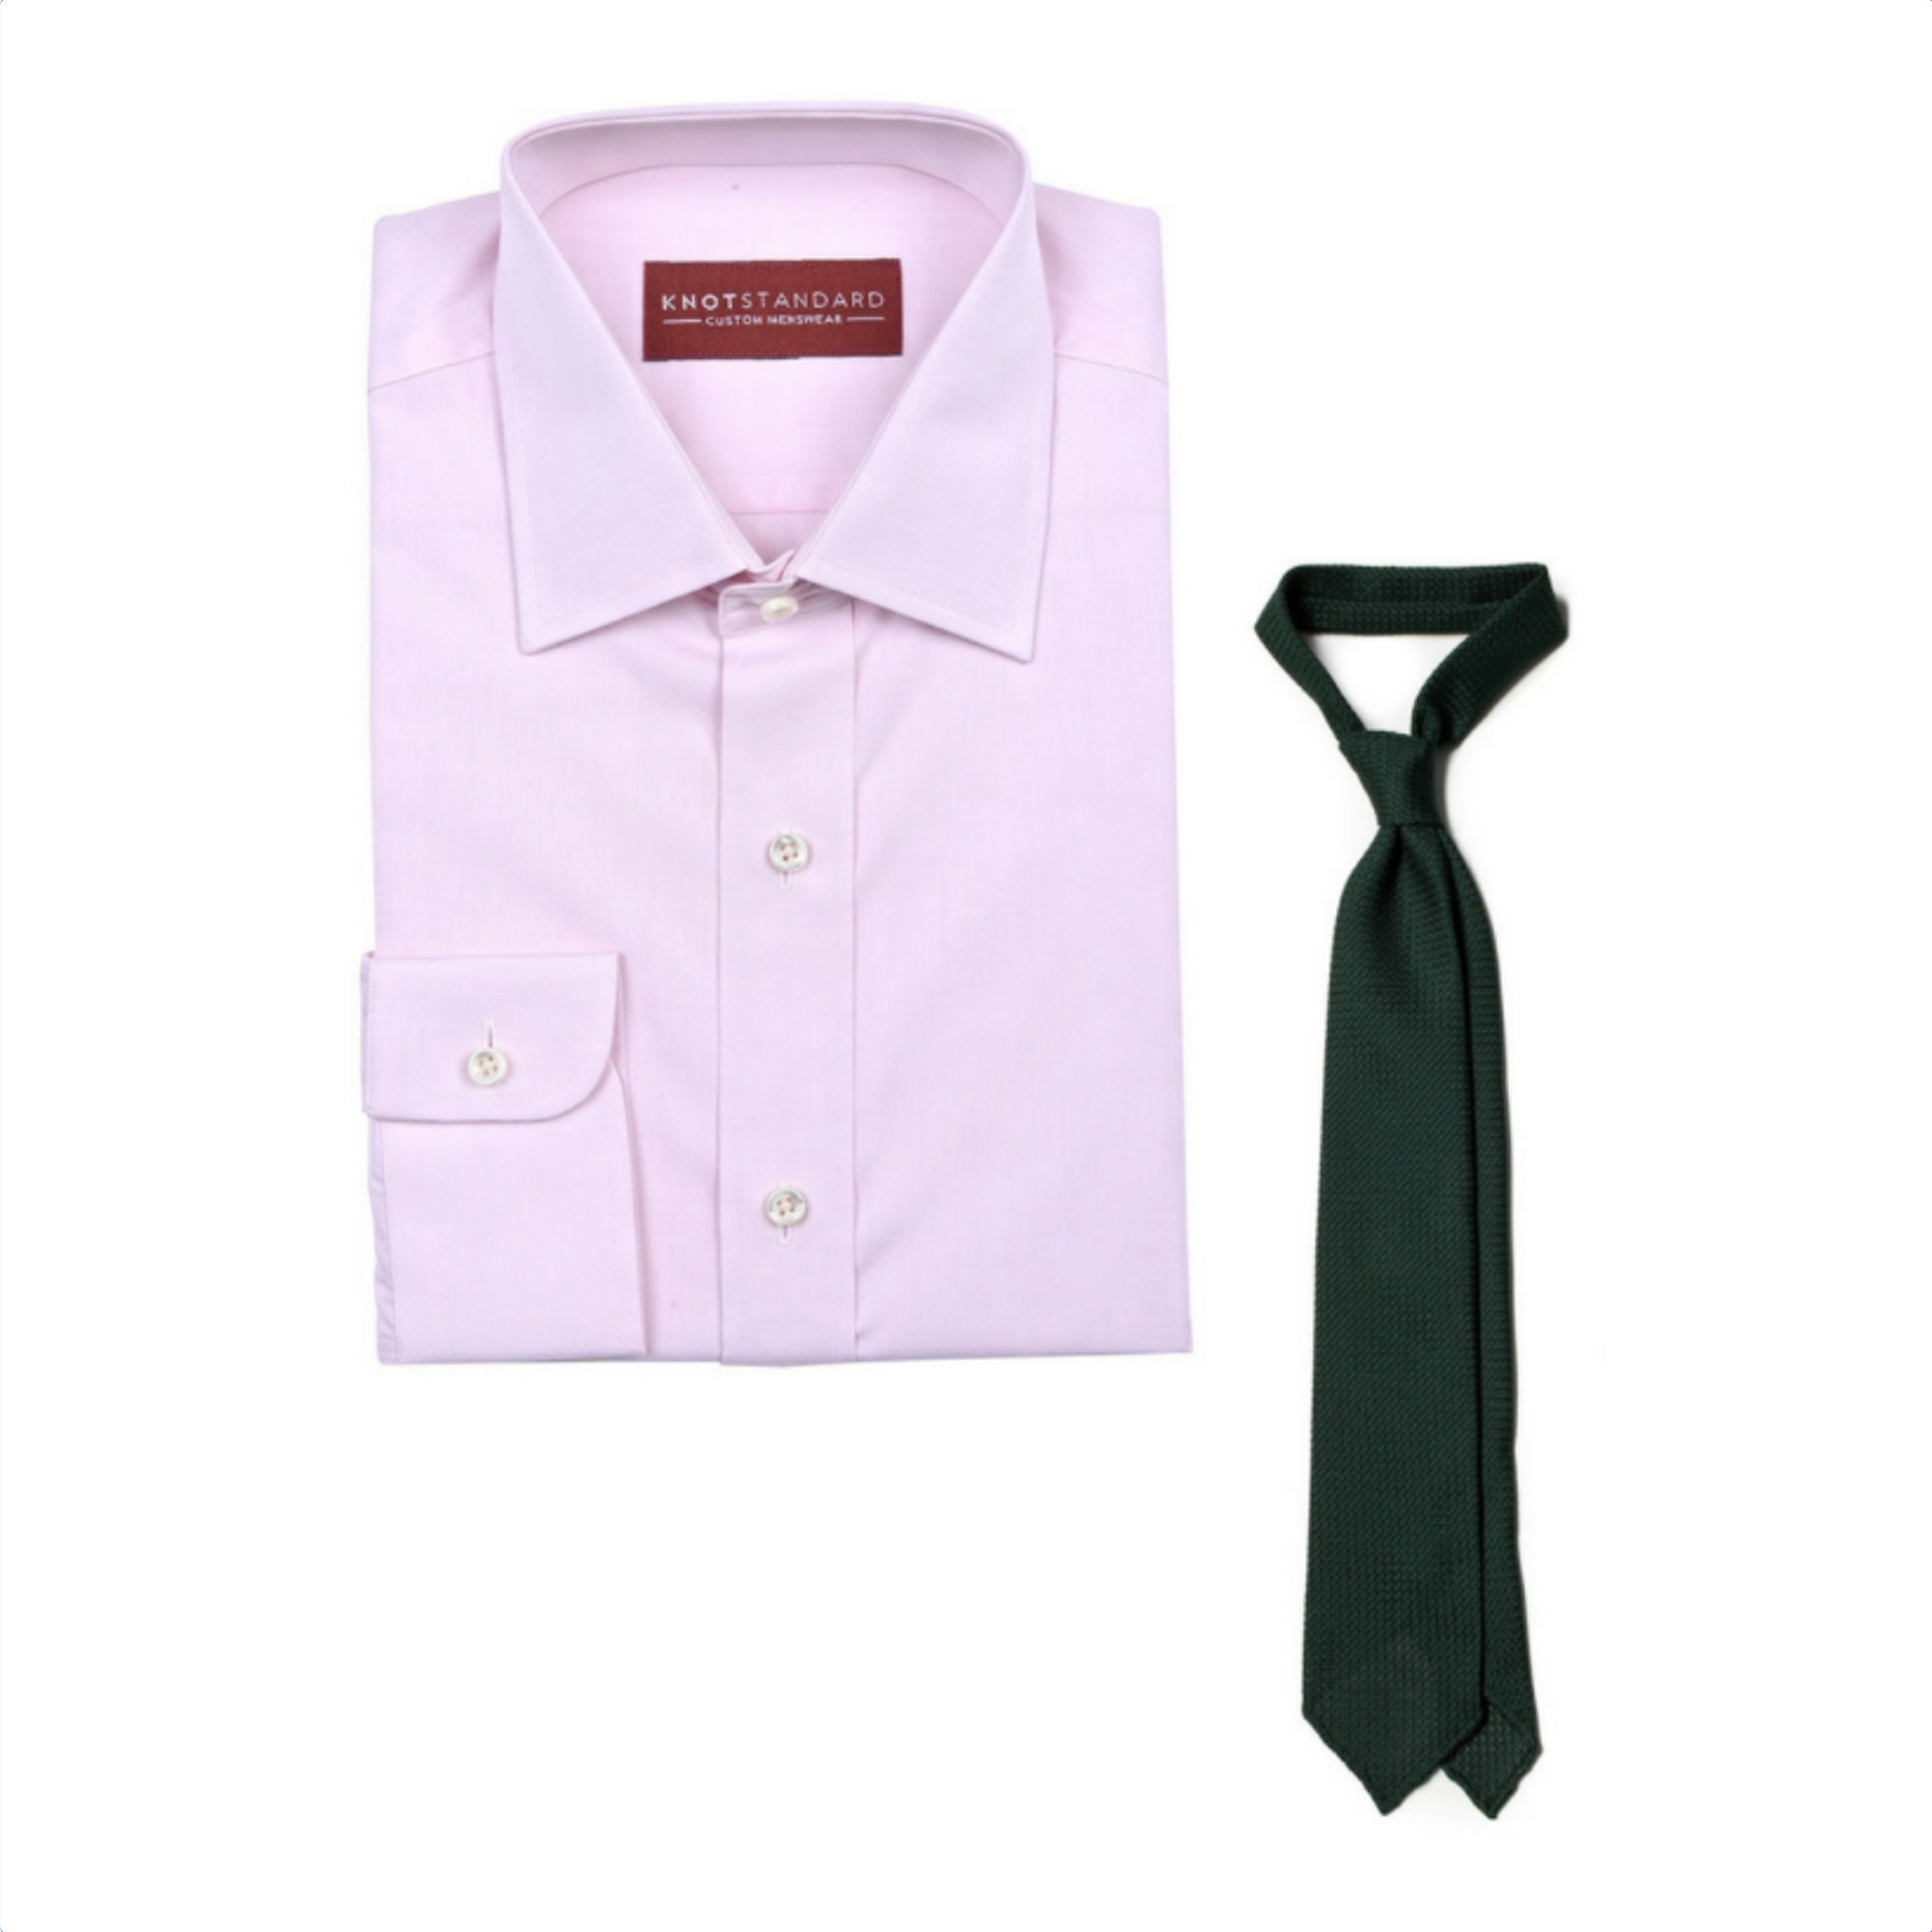 Knot Standard Shirt & Tie Combo